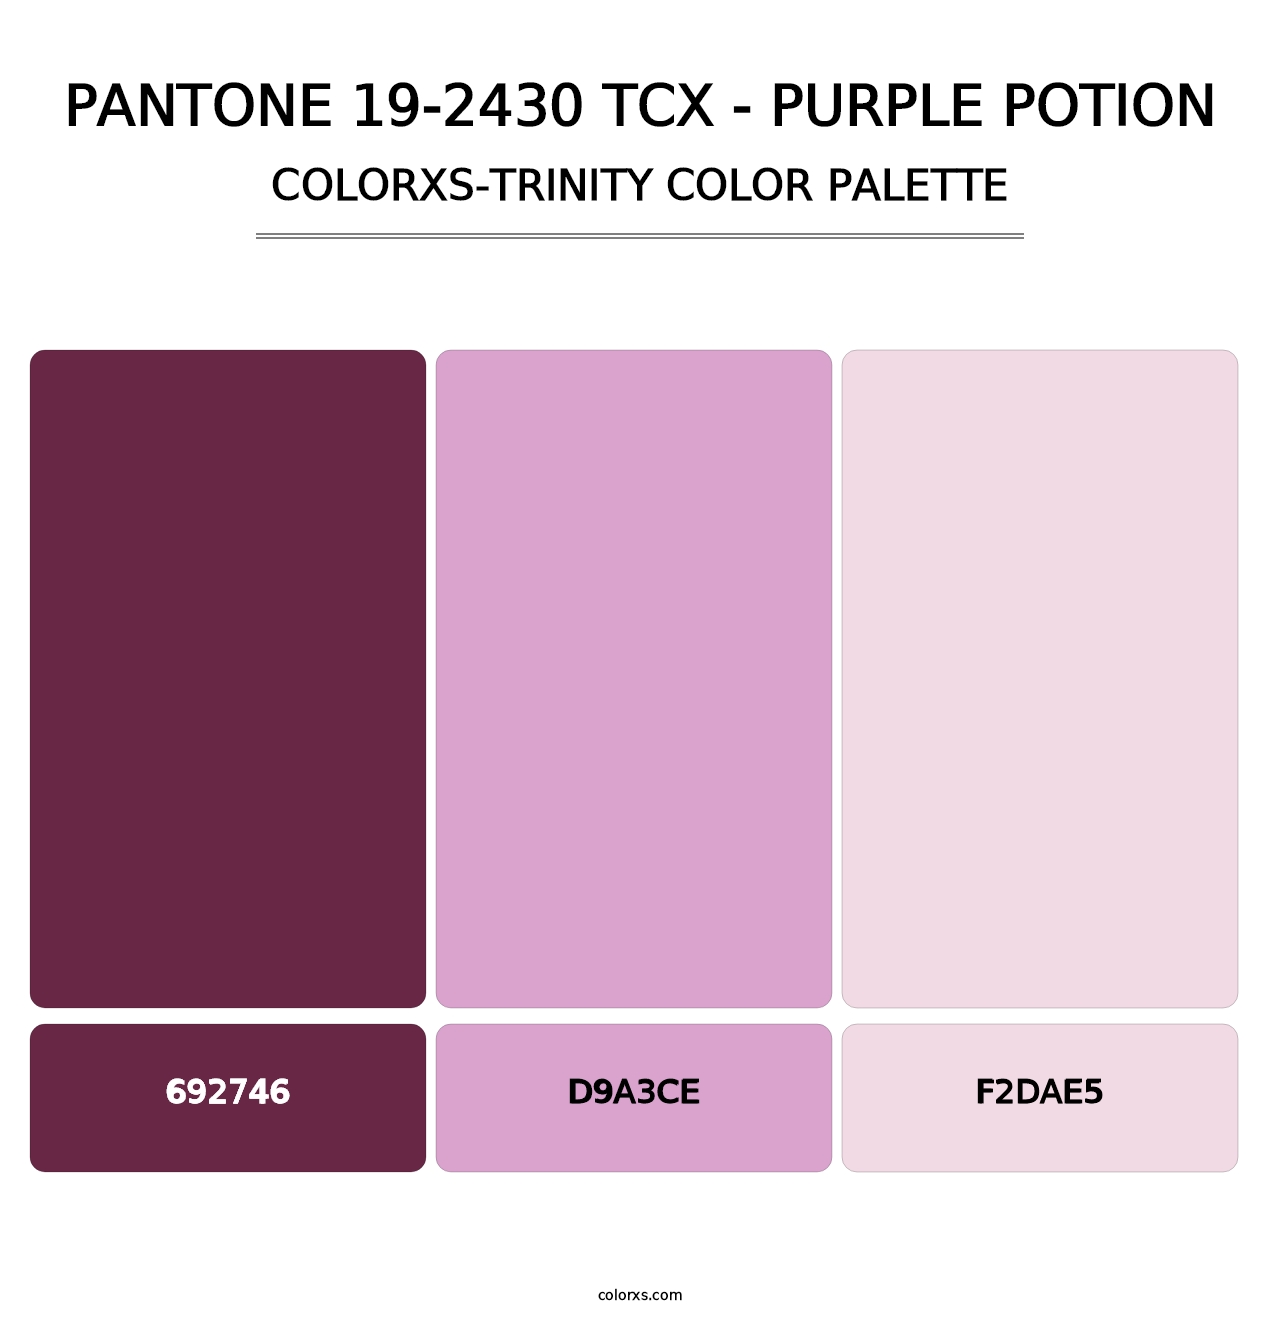 PANTONE 19-2430 TCX - Purple Potion - Colorxs Trinity Palette